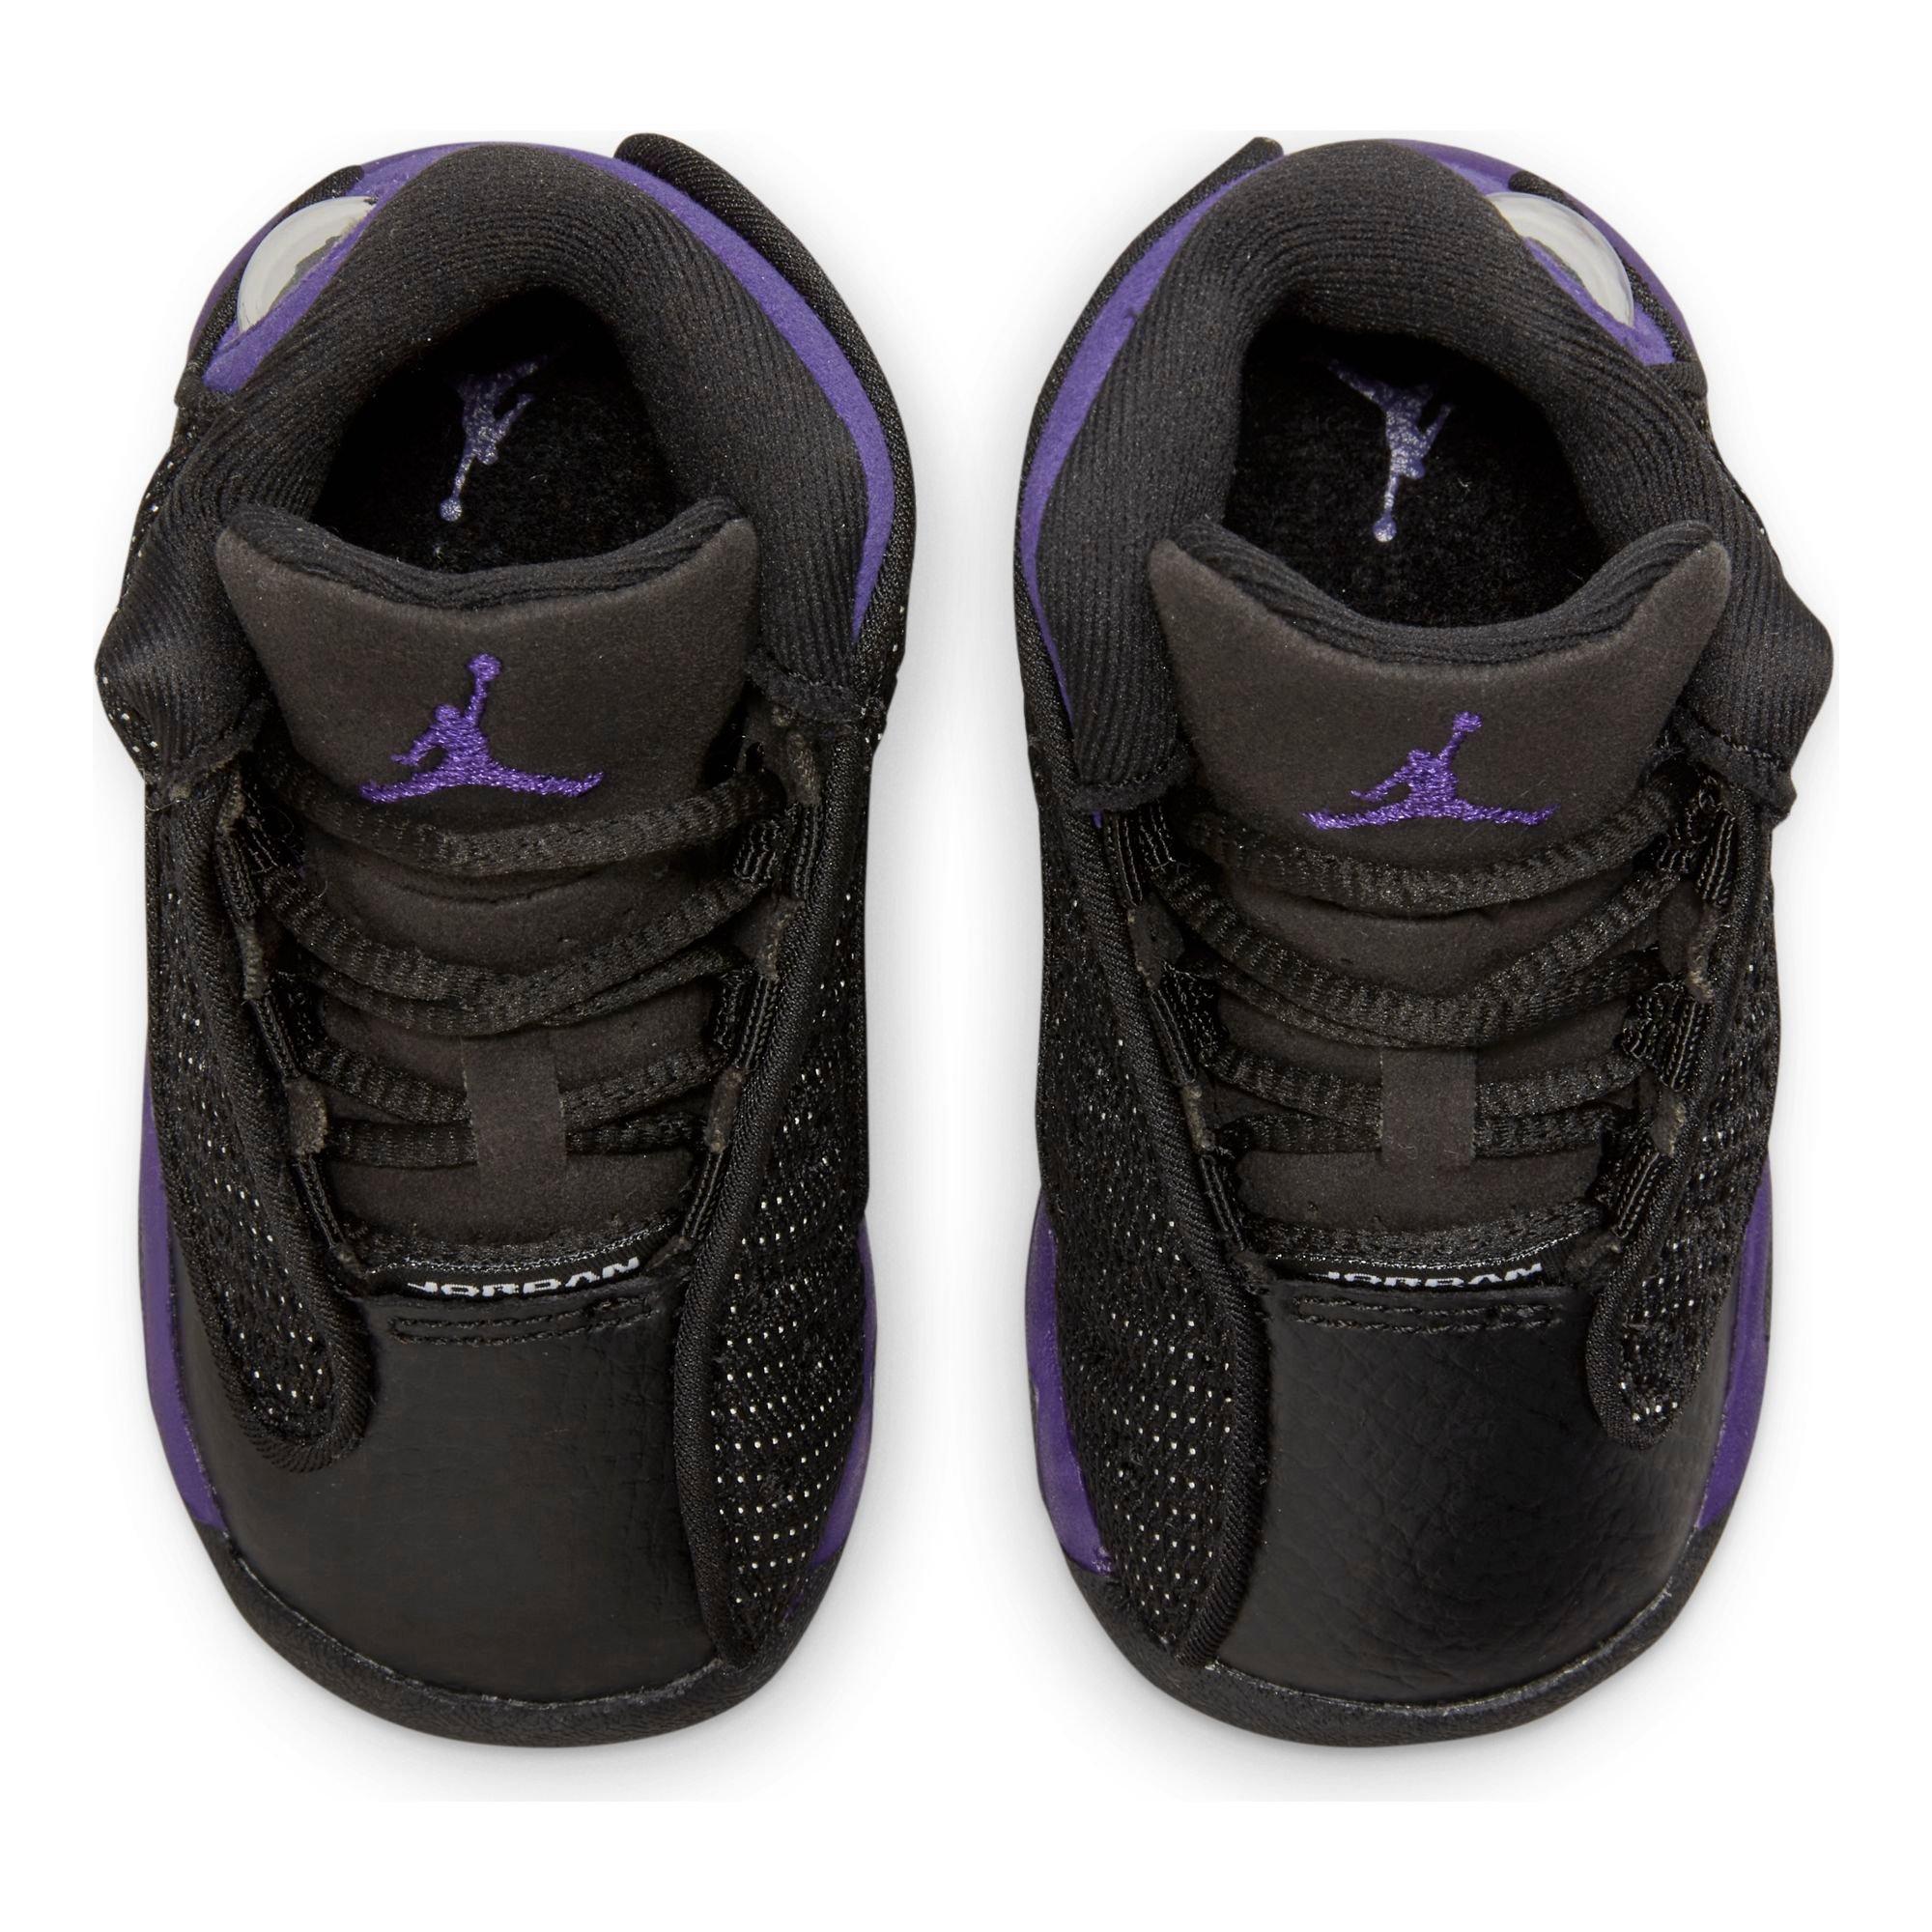 Jordan 13 Retro Black/Court Purple/White Men's Shoe - Hibbett